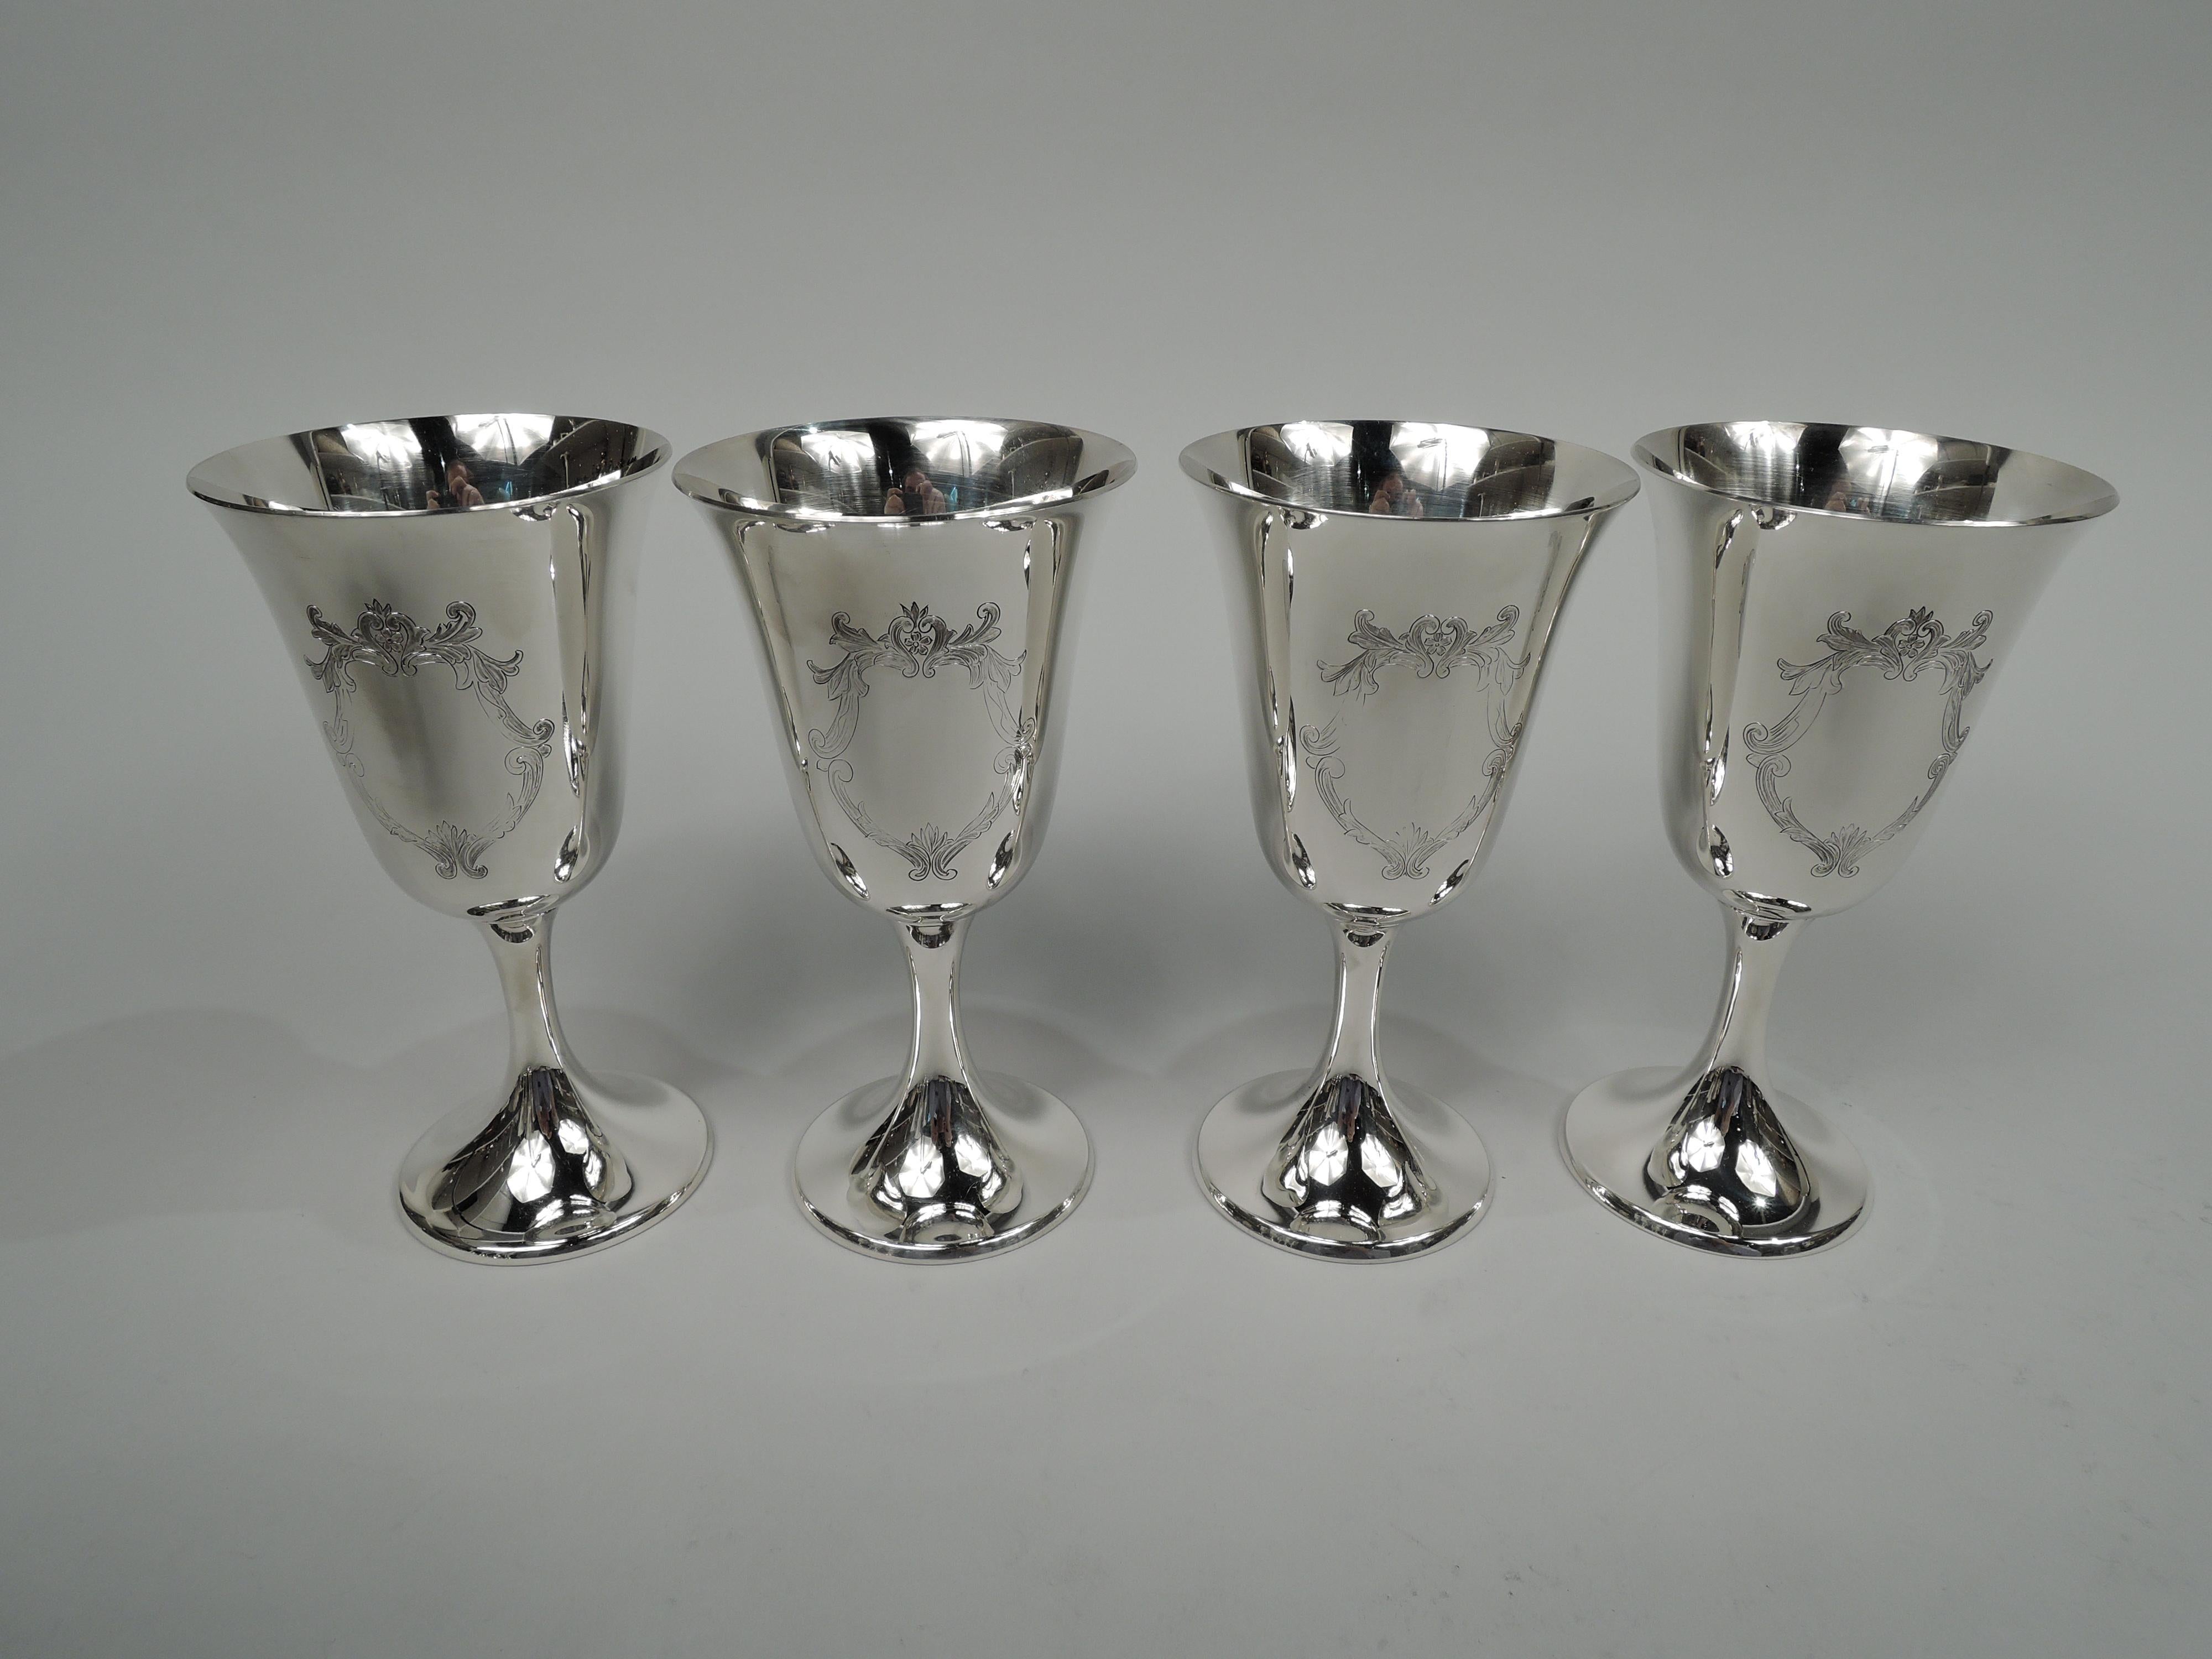 Edwardian Set of 8 Gorham Goblets in Engraved Puritan Pattern For Sale